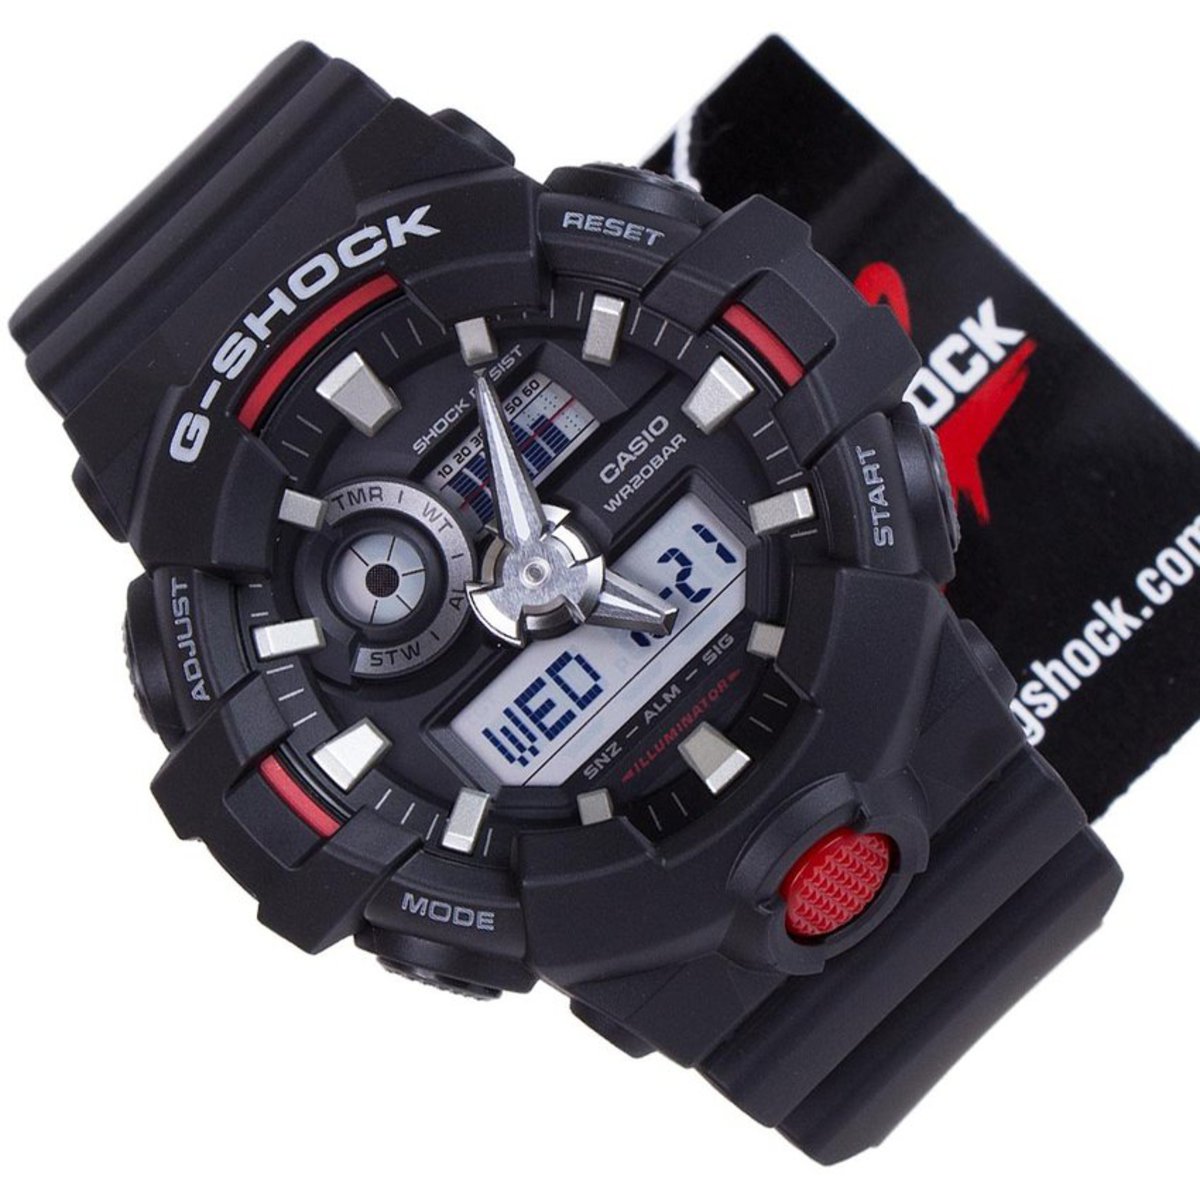 Reloj Casio G-SHOCK GA-700-1ADR